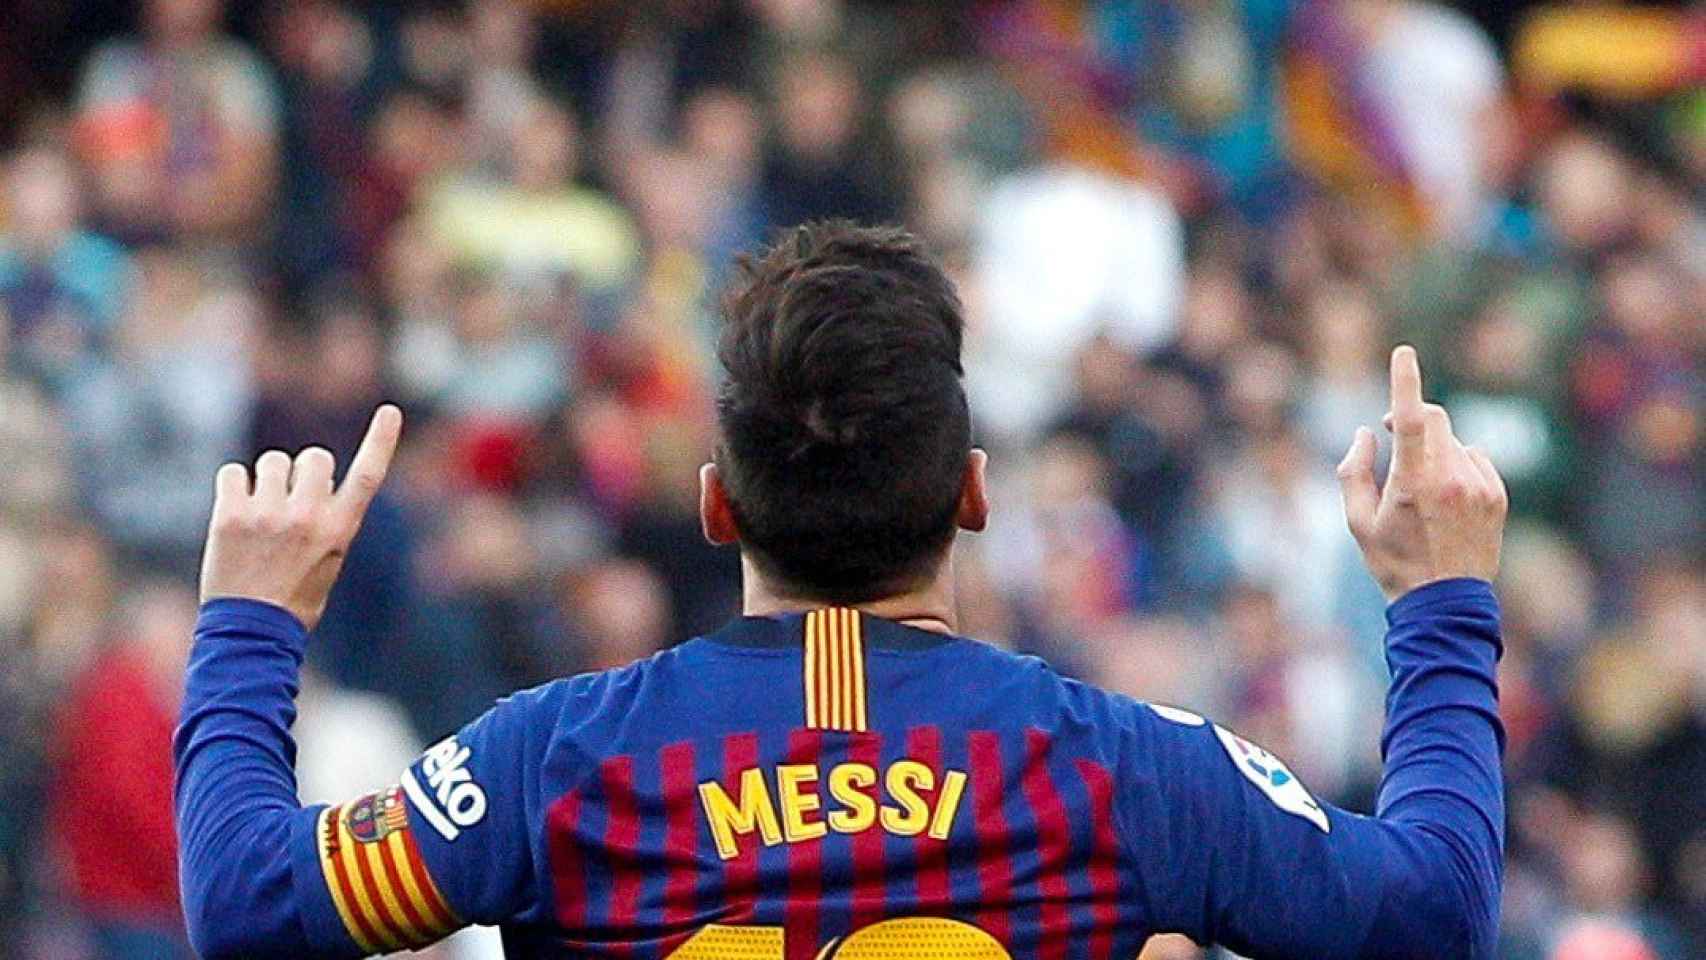 Leo Messi celebra uno de sus goles ante el Espanyol / EFE